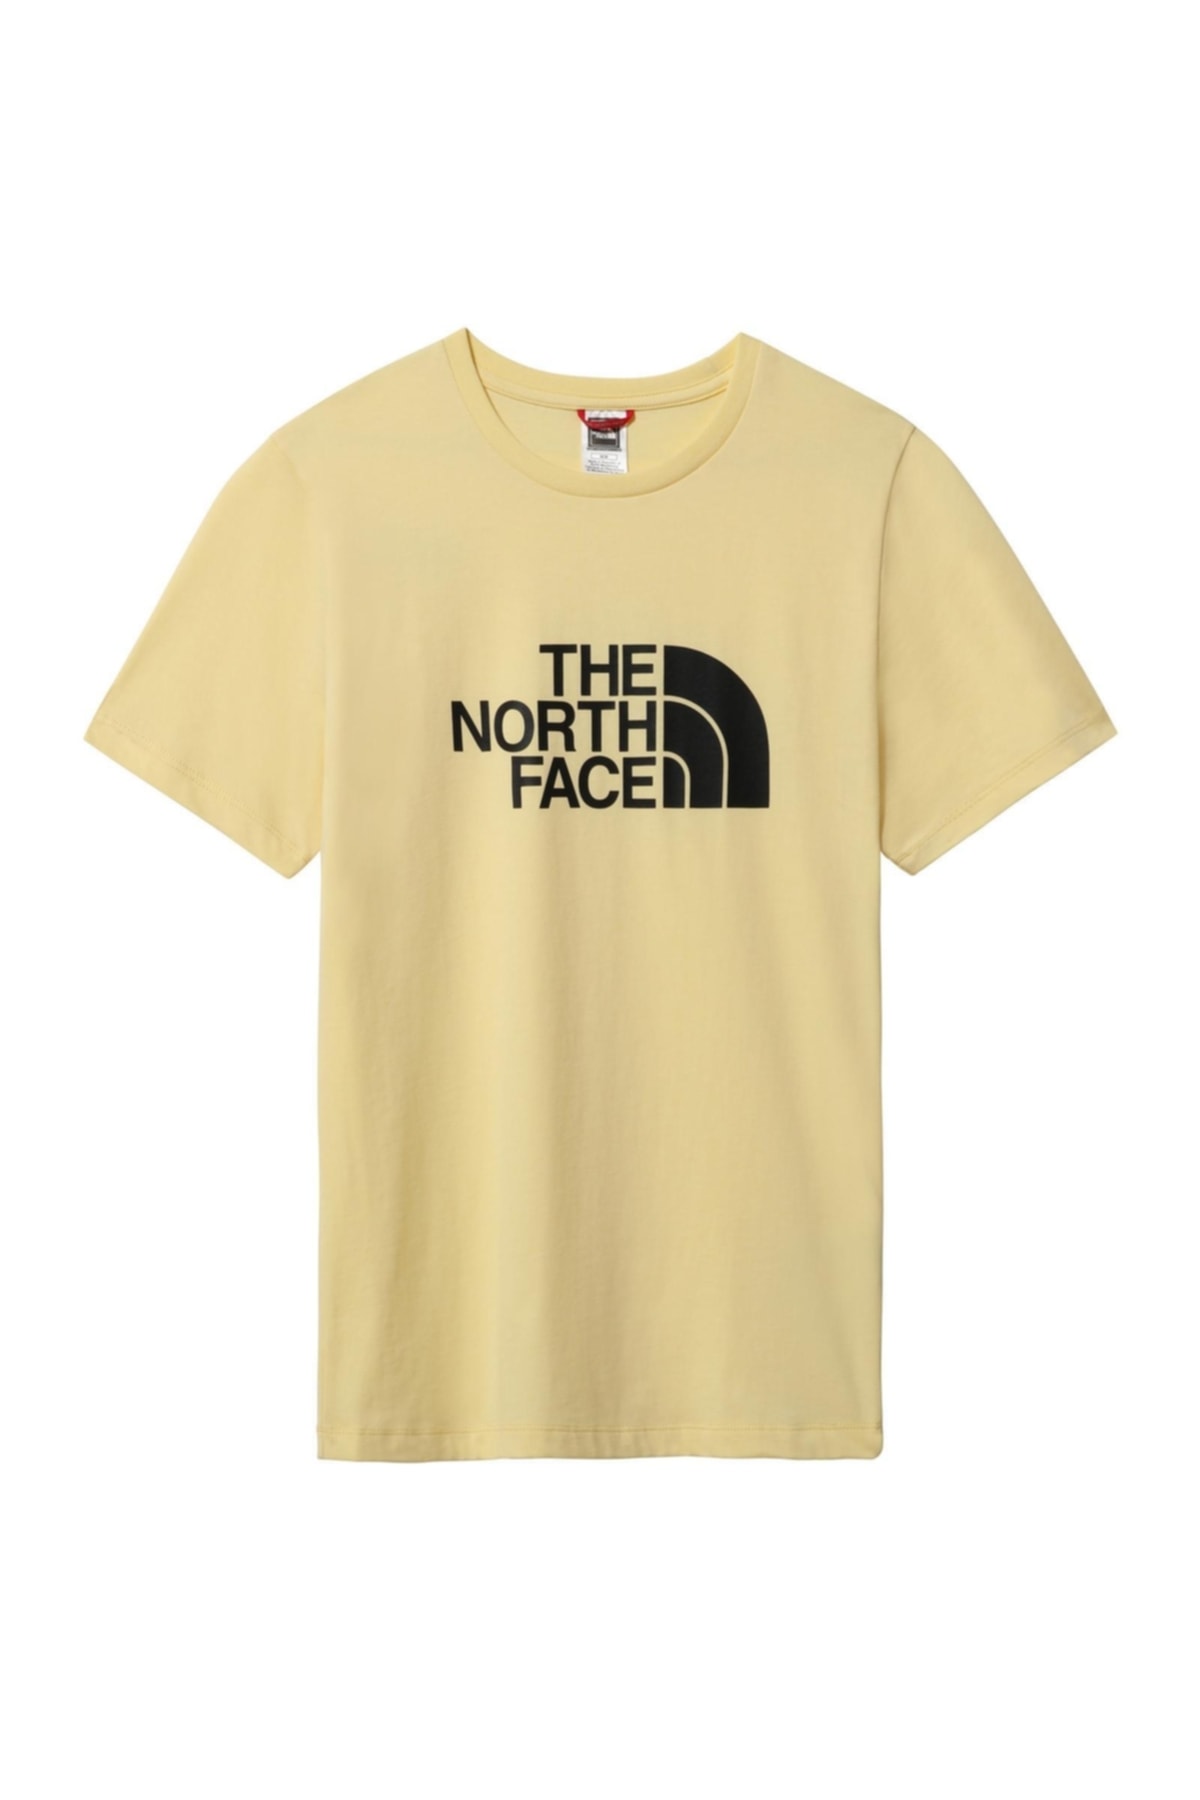 THE NORTH FACE Easy Tee Kadın T-shirt - Nf0a4t1q3r4